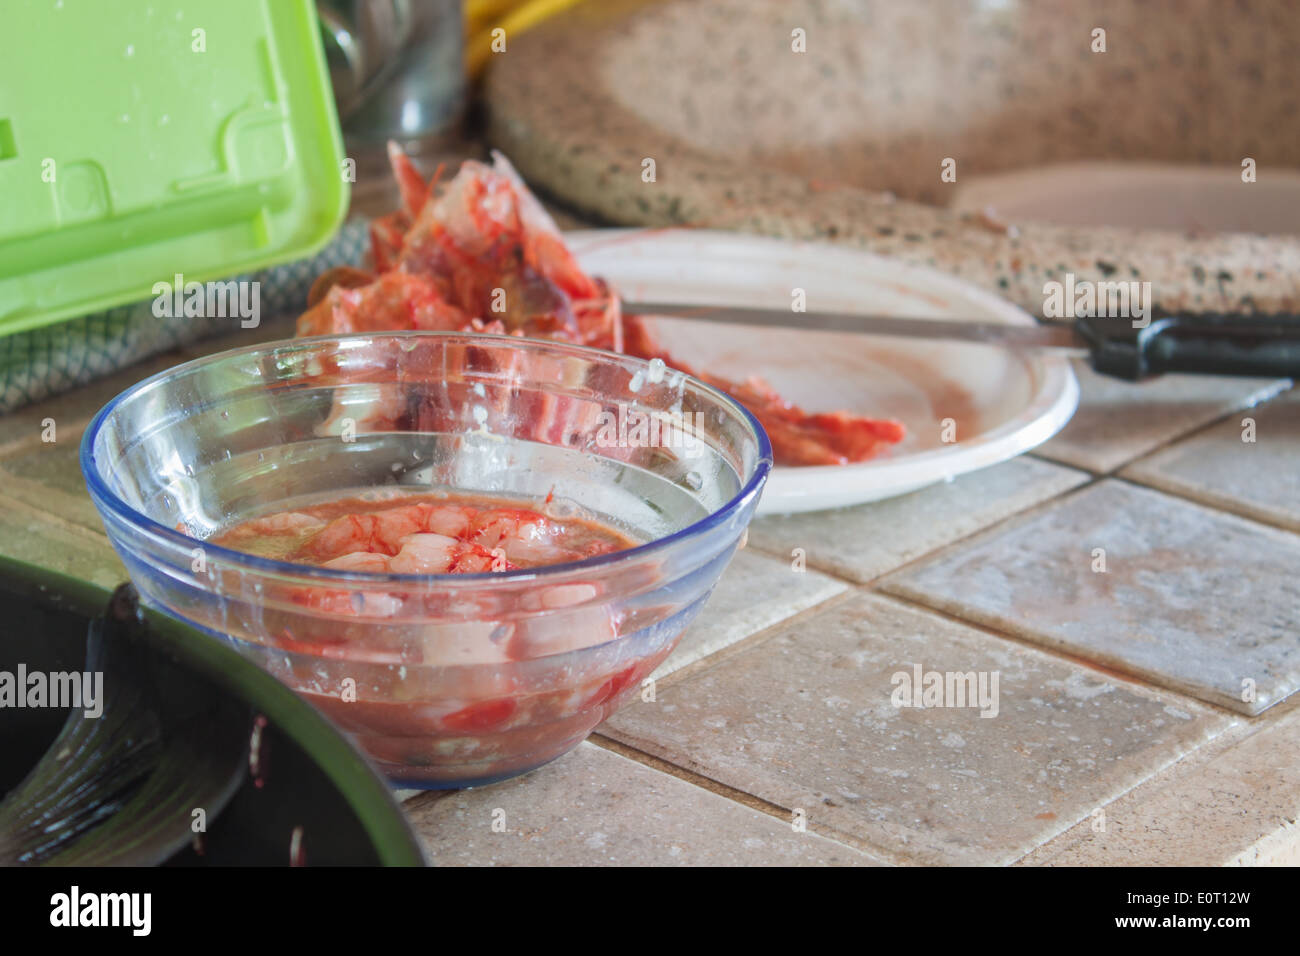 Préparer les fruits de mer crevettes propre corbeille coupe plaque de cuisson cook cuisine accueil libre personne ne Banque D'Images